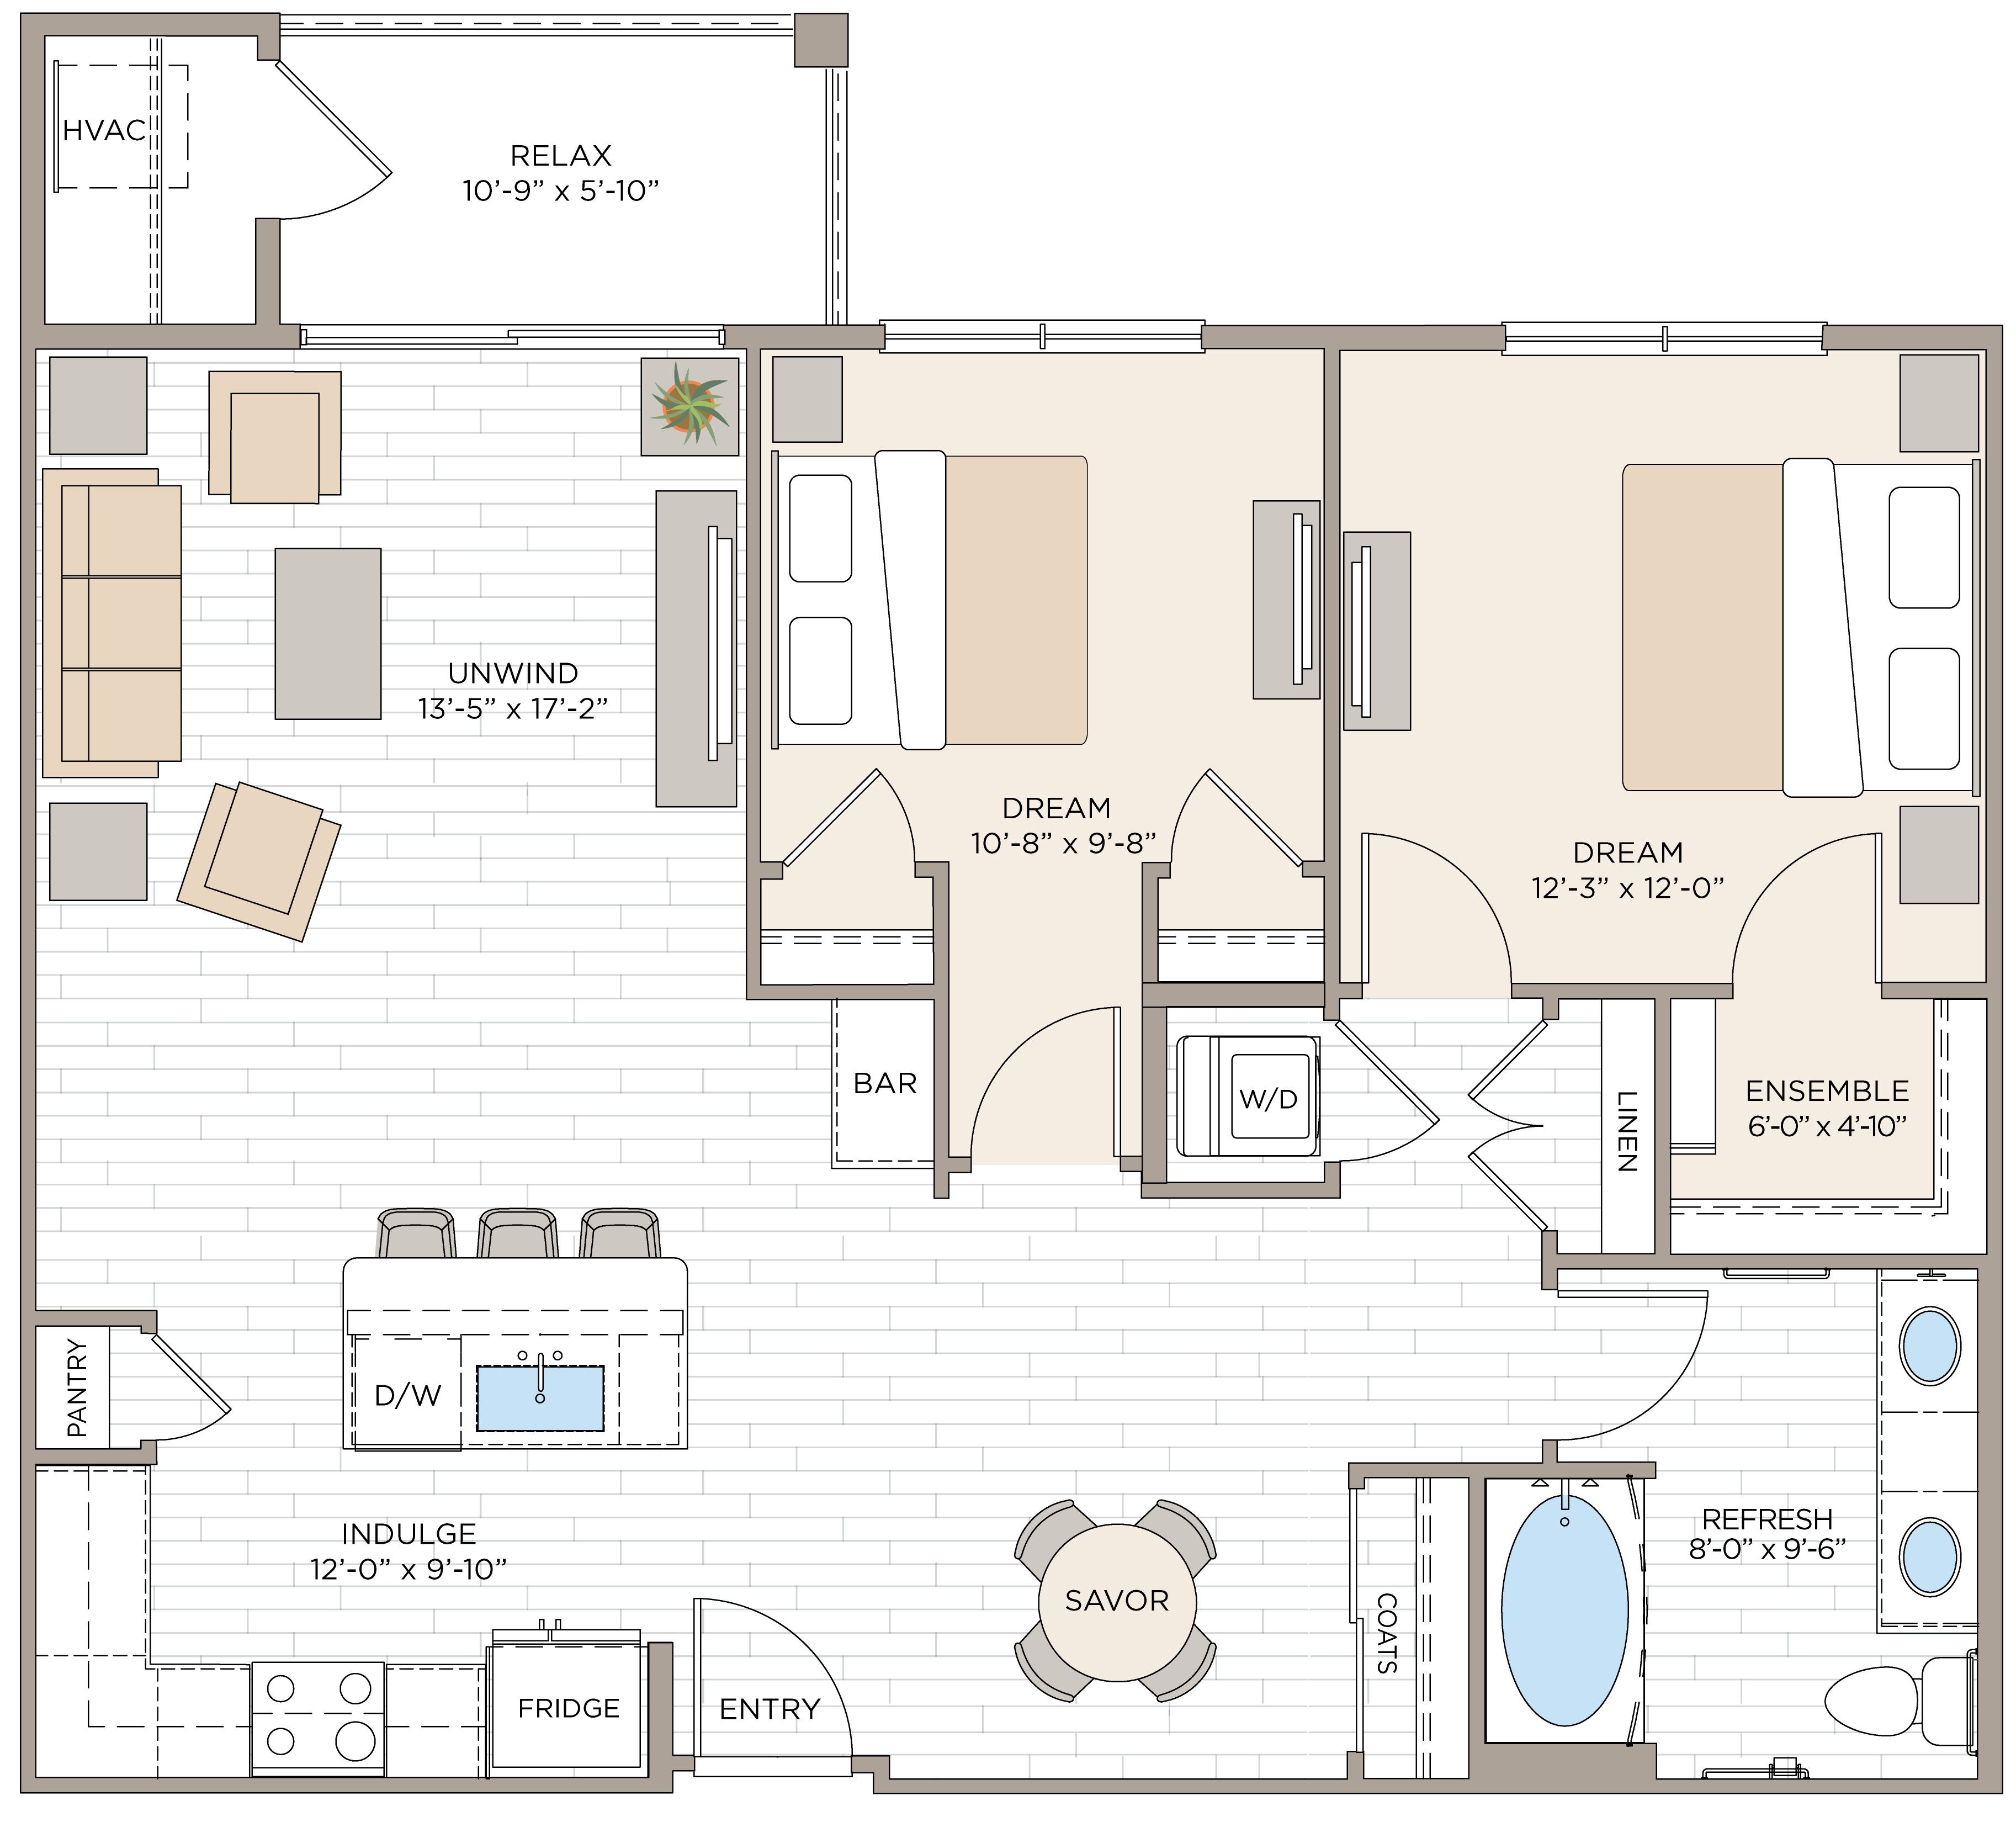 Floorplan for Apartment #14124, 2 bedroom unit at Halstead Maynard Crossing